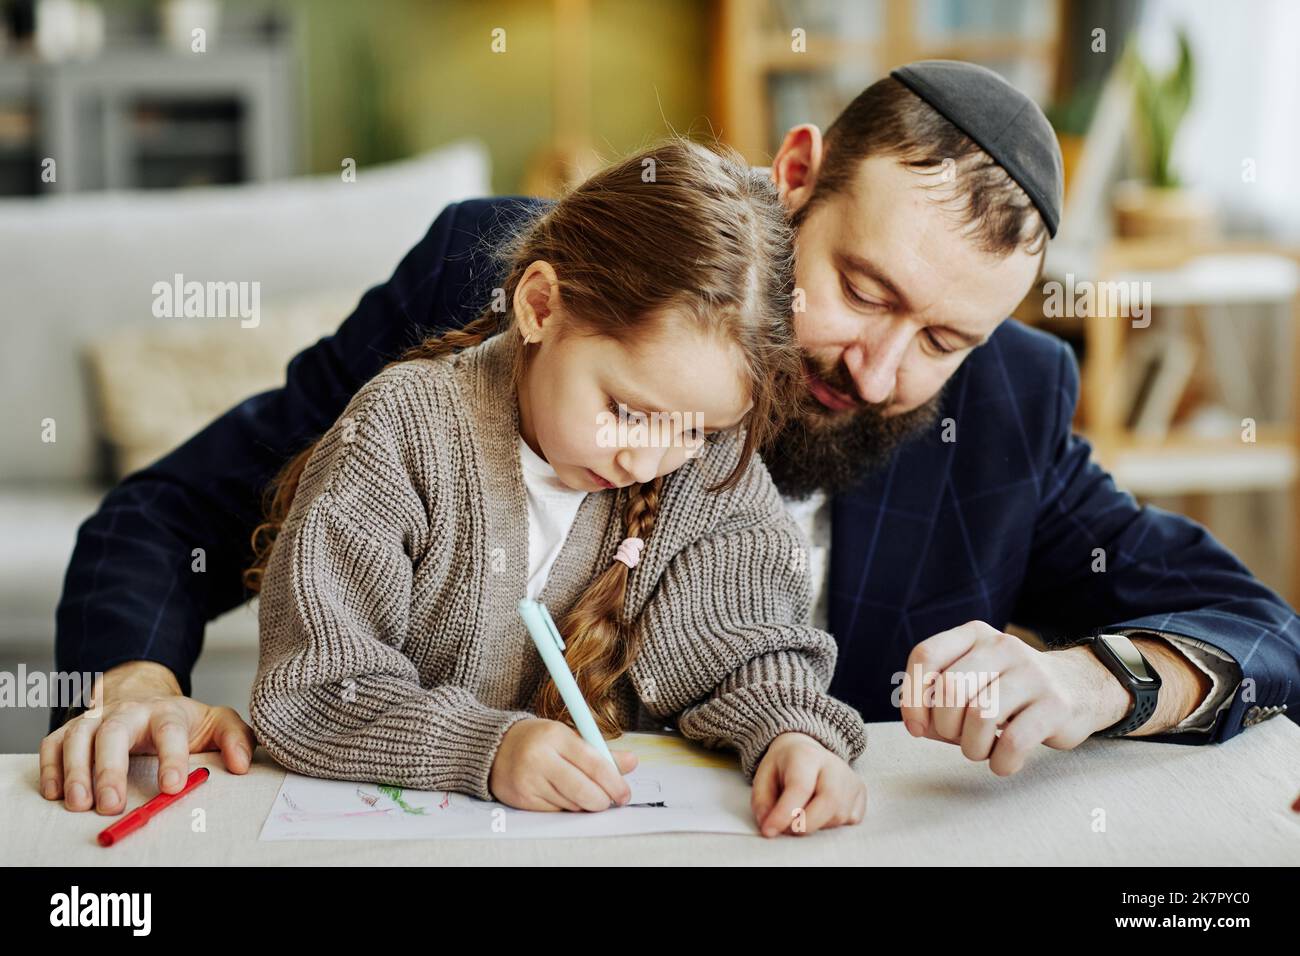 Porträt eines fürsorglichen jüdischen Vaters, der mit seiner Tochter zu Hause Bilder zeichnet Stockfoto